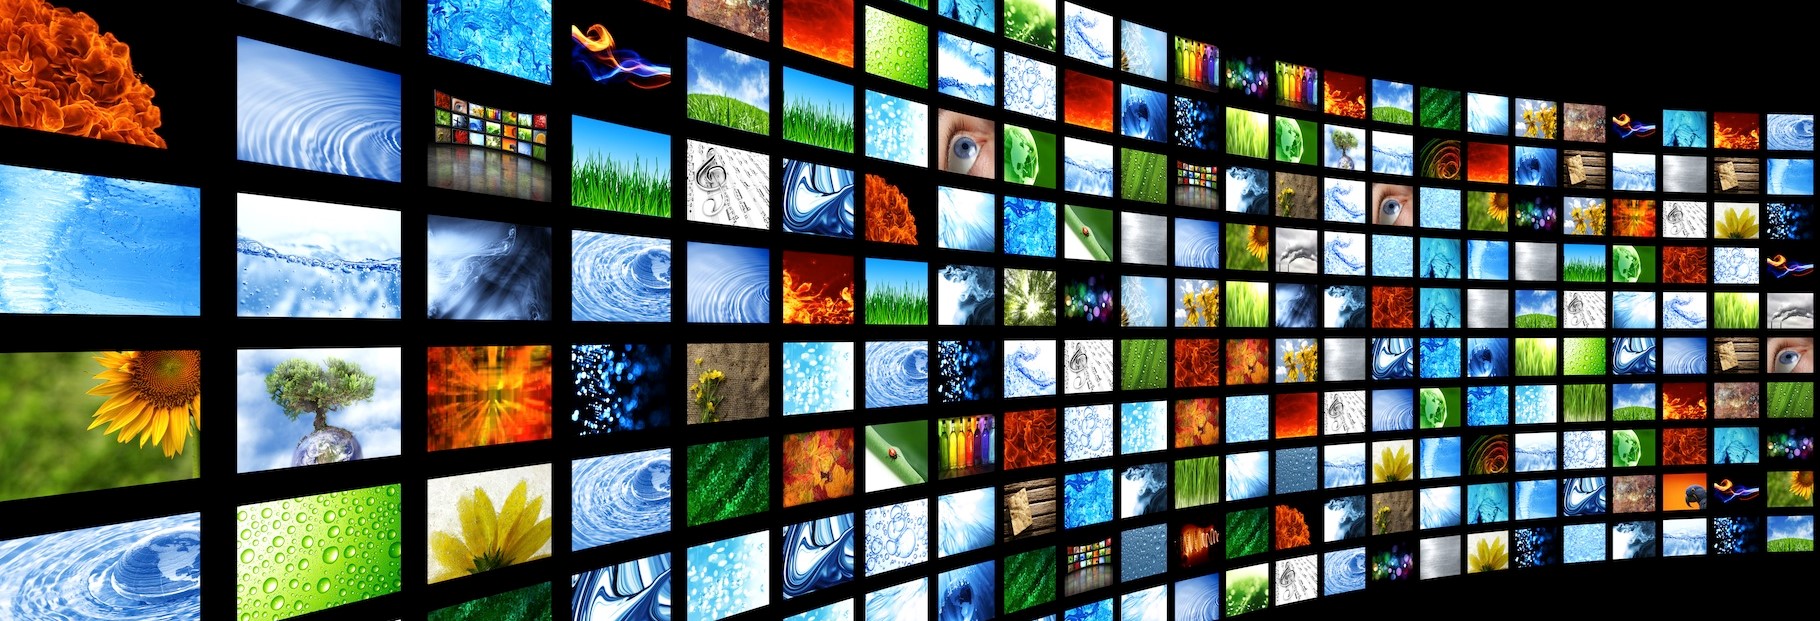 tv screens , الكترونيات- اعلن مجاناً في منصة وموقع عنكبوت للاعلانات المجانية المبوبة|photos/2018/03/slider1-tv-screens.jpeg